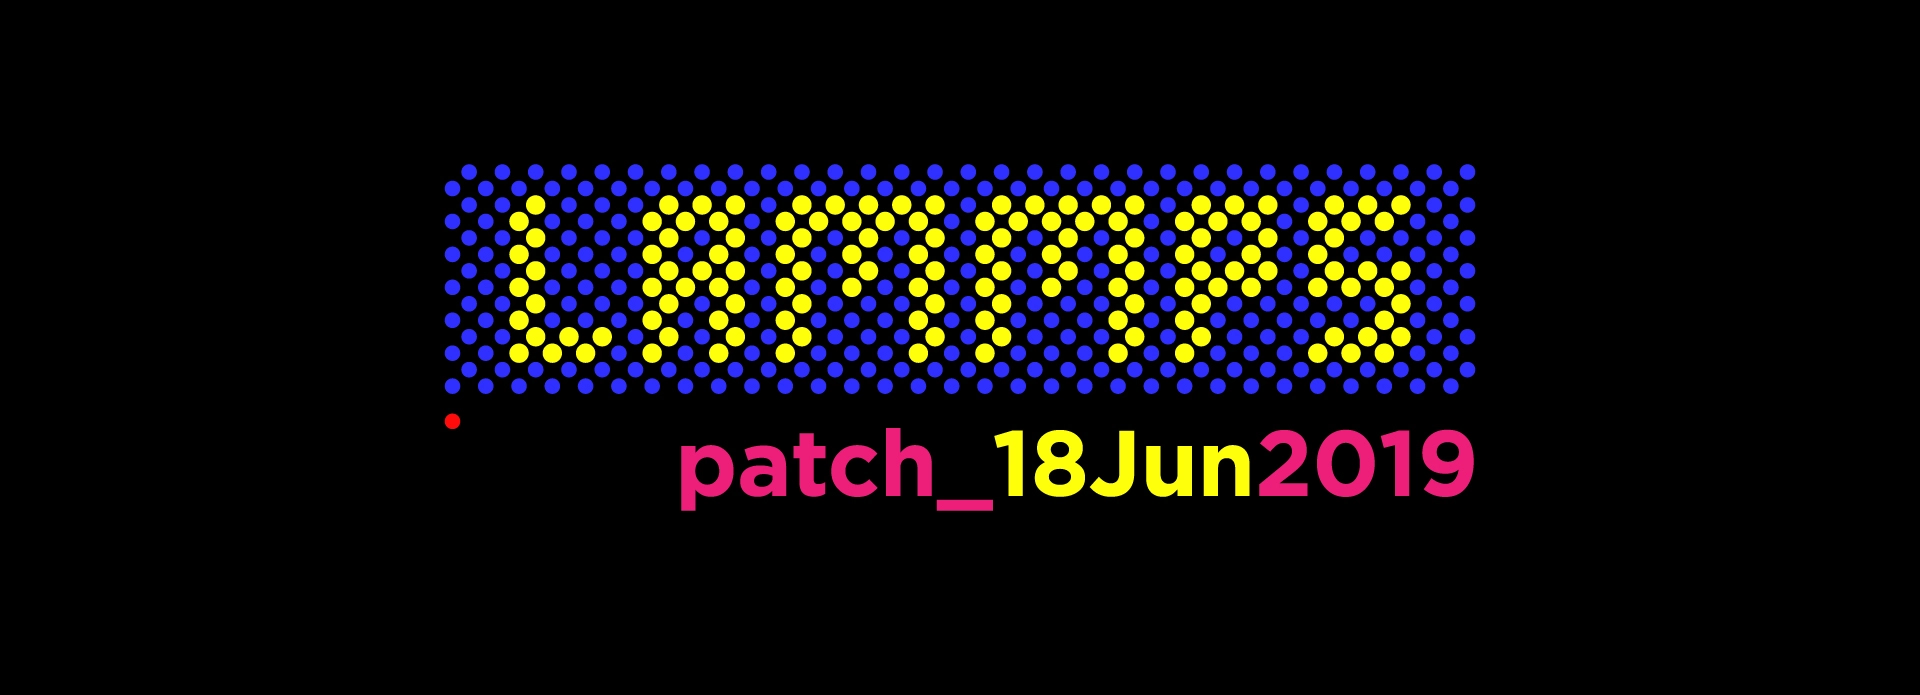 LAMMPS-patch-18Jun_2019.jpg